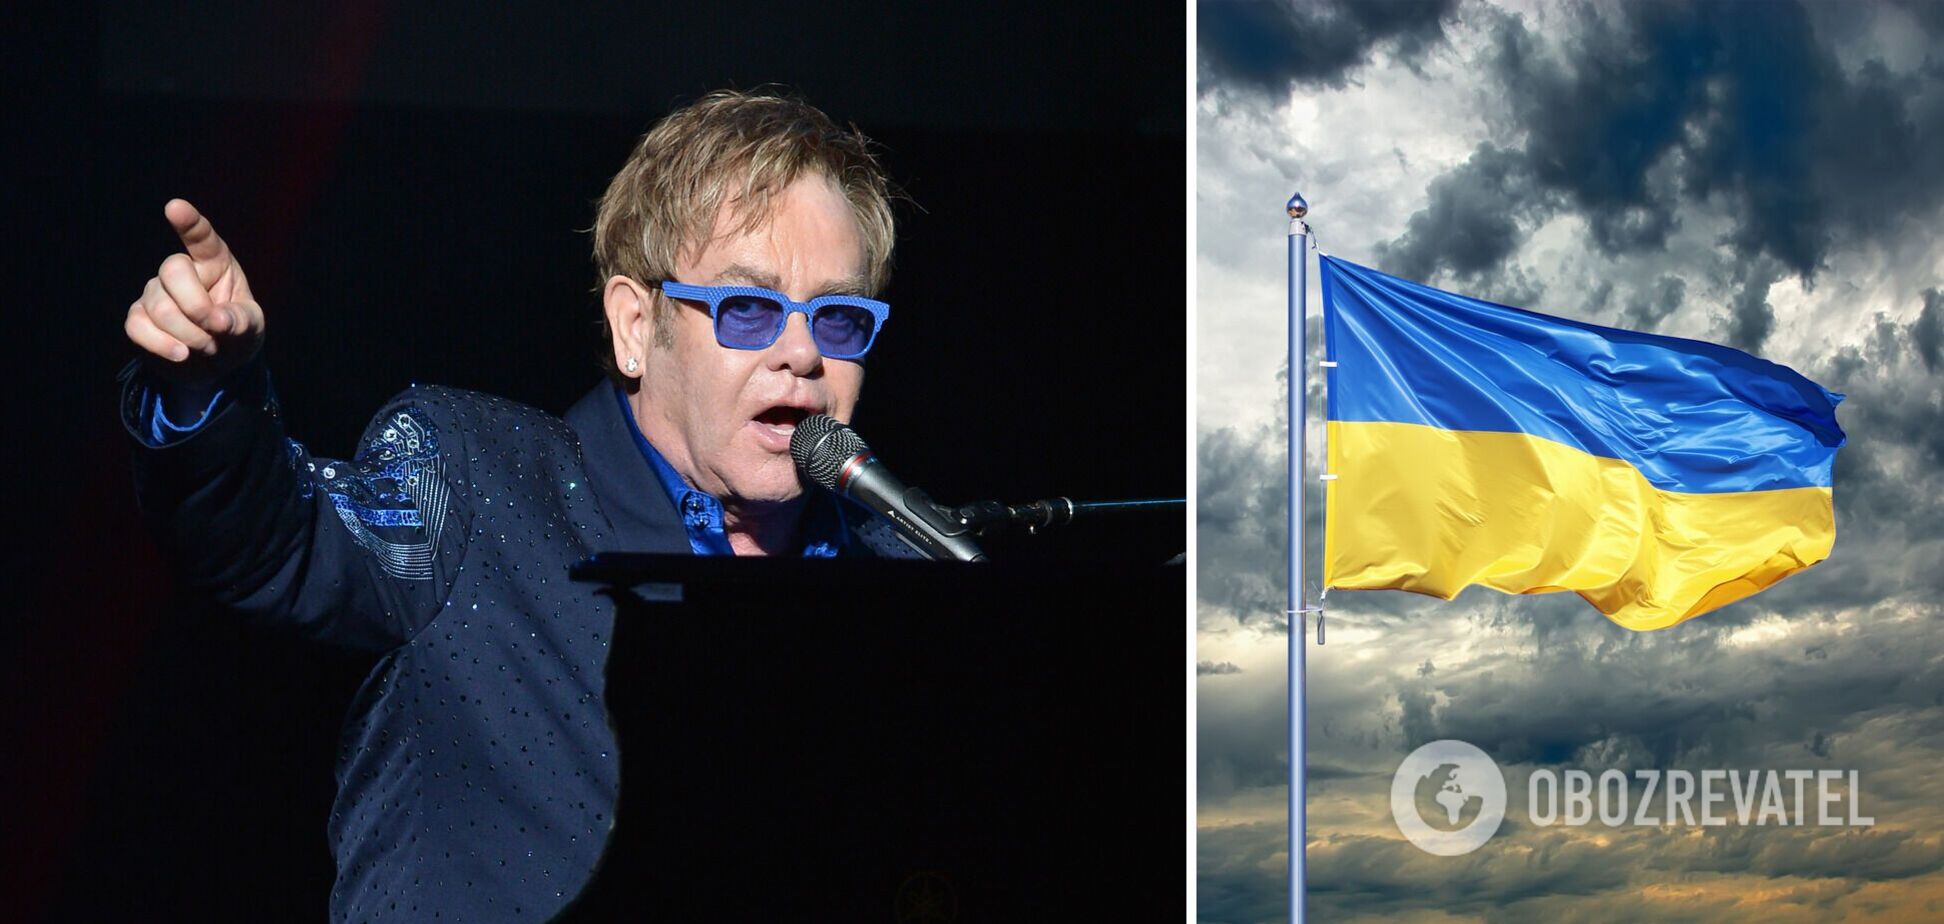 Елтон Джон перервав виступ в Англії, коли побачив у залі українку із синьо-жовтим прапором. Відео